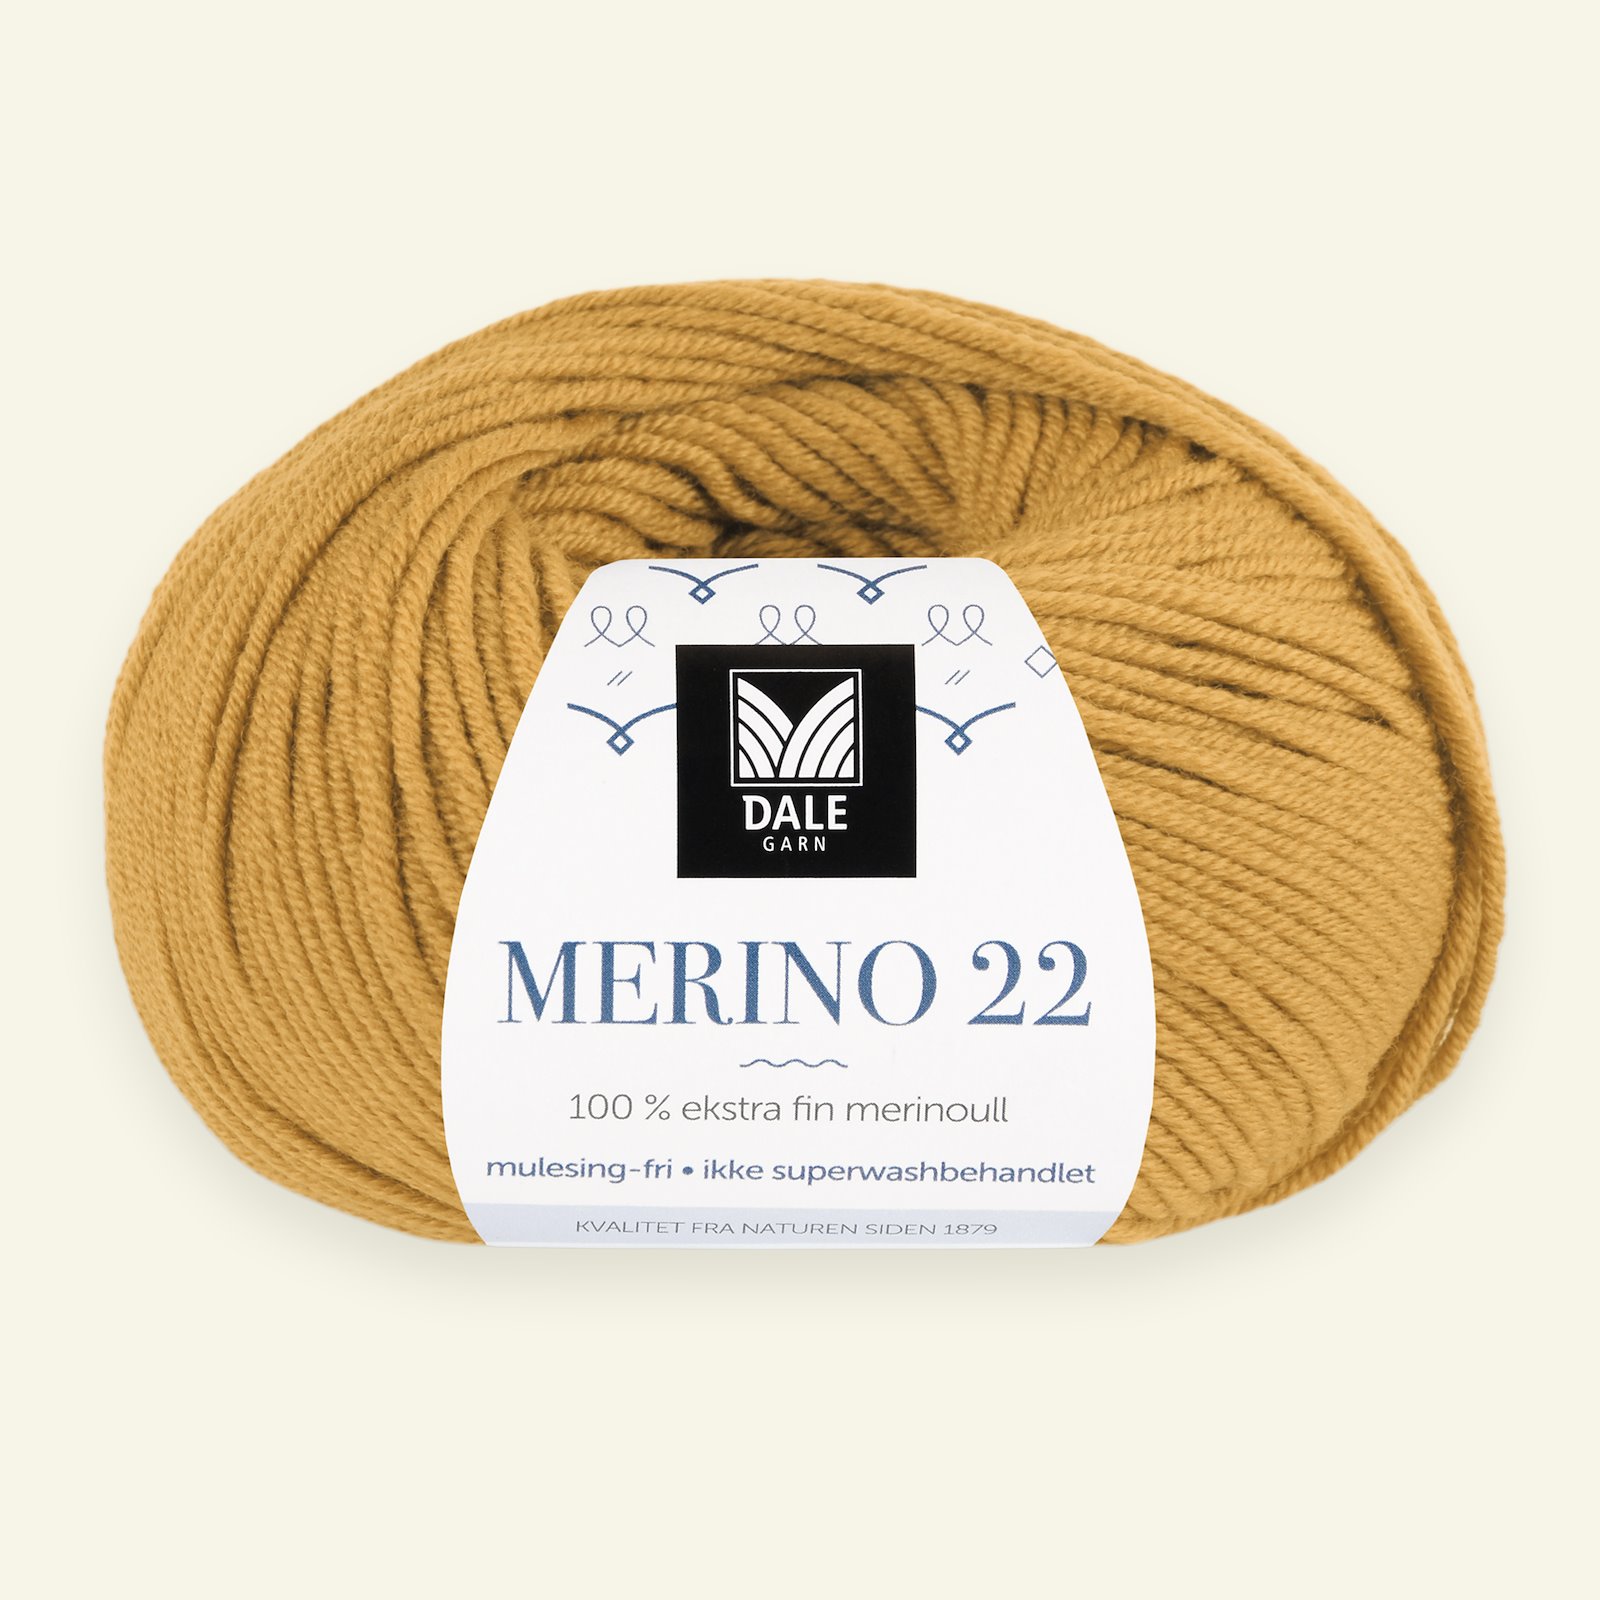 Dale Garn, 100% extra fine merino wool yarn, "Merino 22", sweetcorn yellow (2020) 90000381_pack